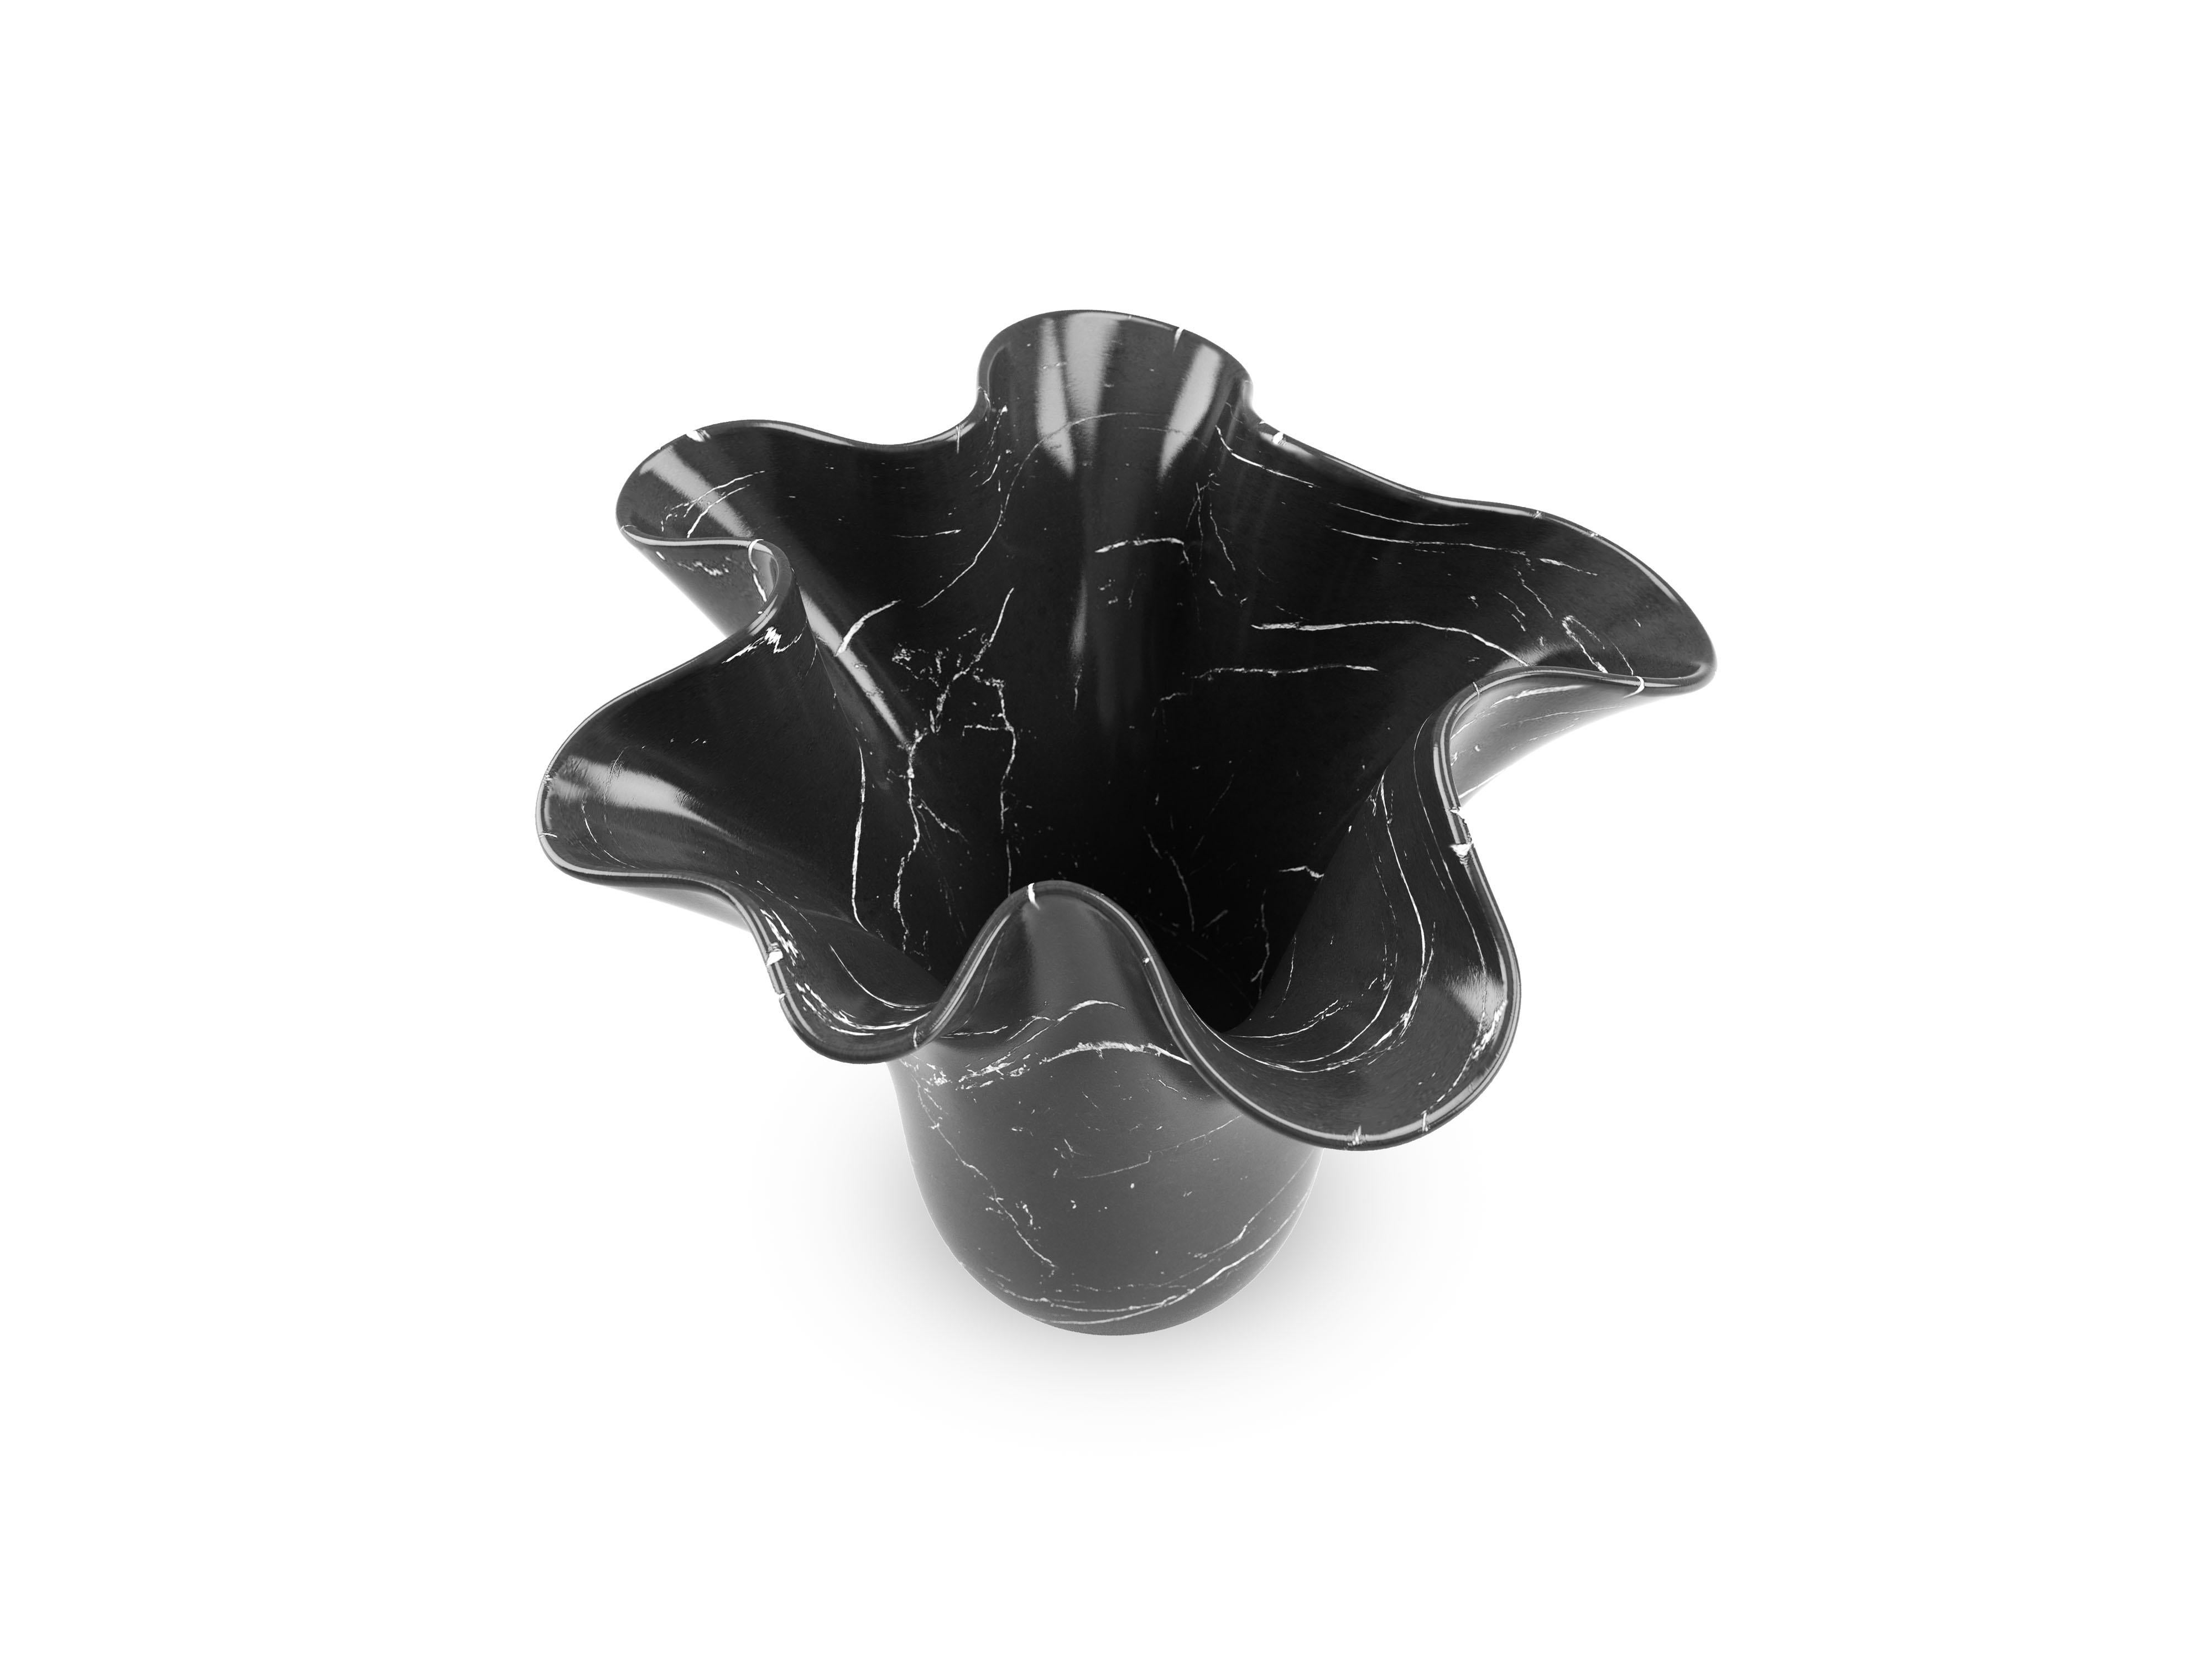 Vase sculptural taillé à la main dans un bloc massif de marbre Marquina, finition polie. Ce vase reproduit, dans une version plus petite, le vase sculptural iconique PV05 conçu par l'Atelier Barberini & Gunnell, fabriqué à la main en édition limitée